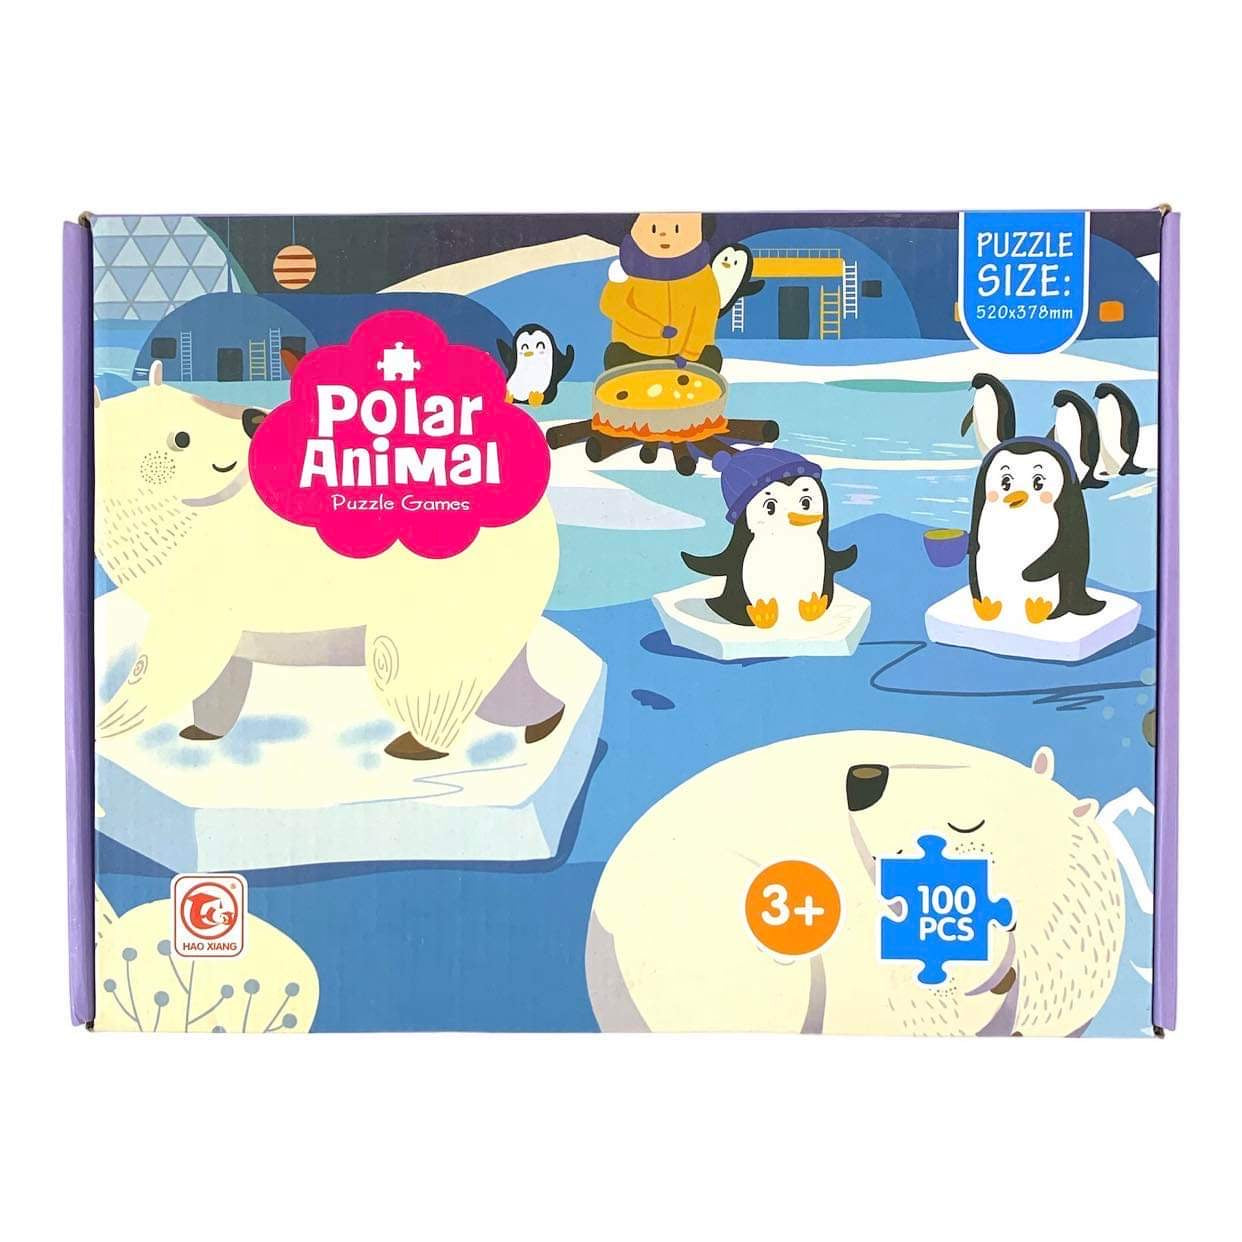 Polar Animal Puzzle Games 100 Pcs || لعبة بازل تركيب ١٠٠ قطعة الحيوانات الثلجية